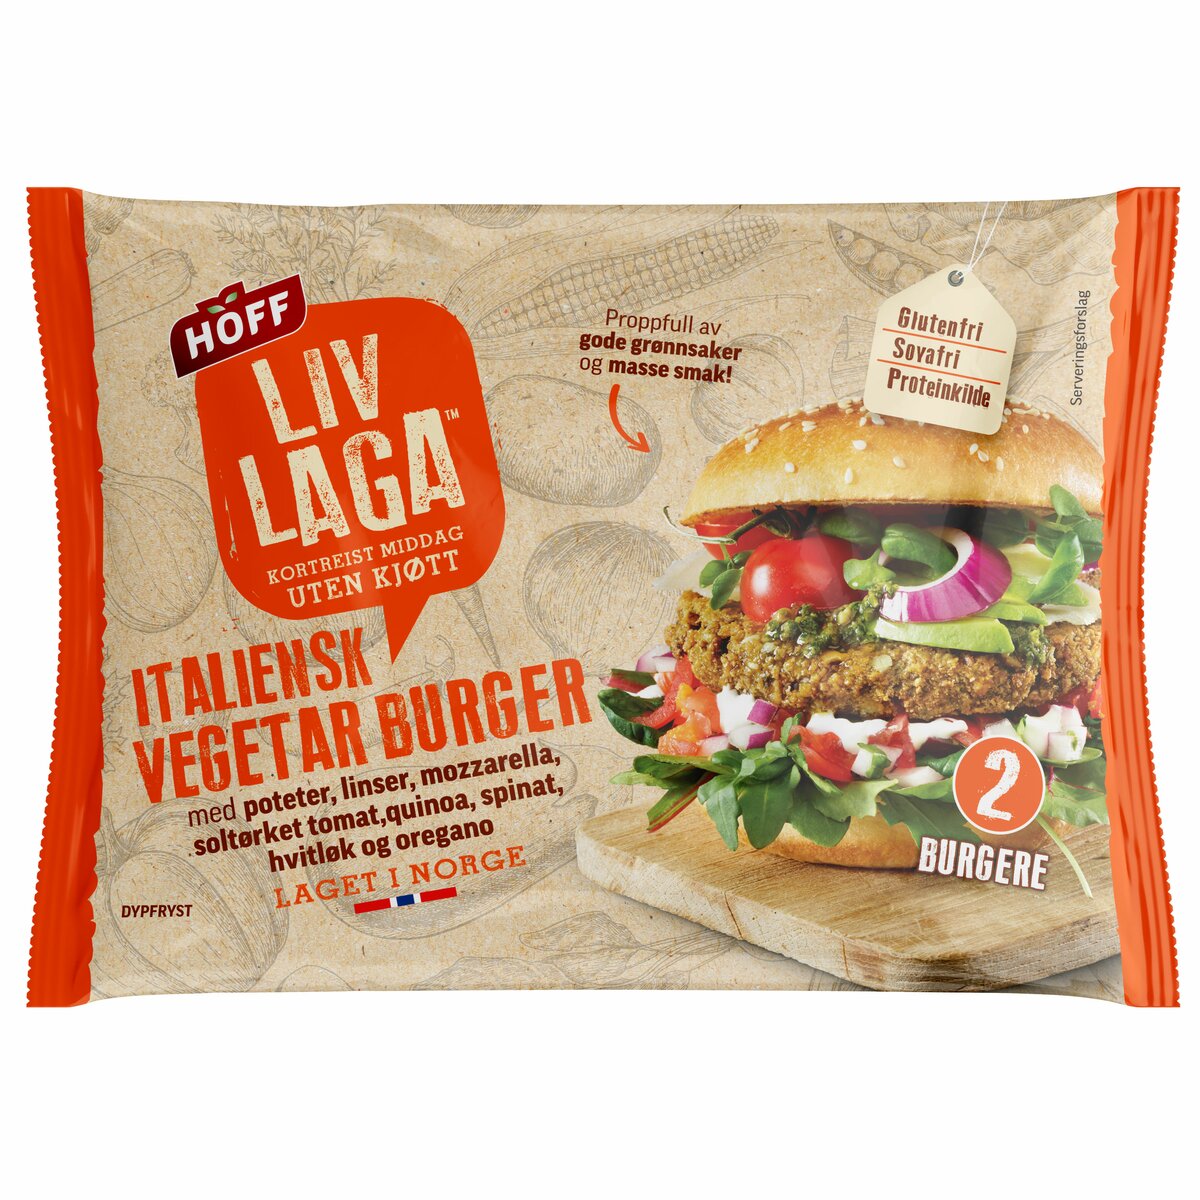 Prøv Laga Italiensk vegetarburger fra HOFF Liv Laga